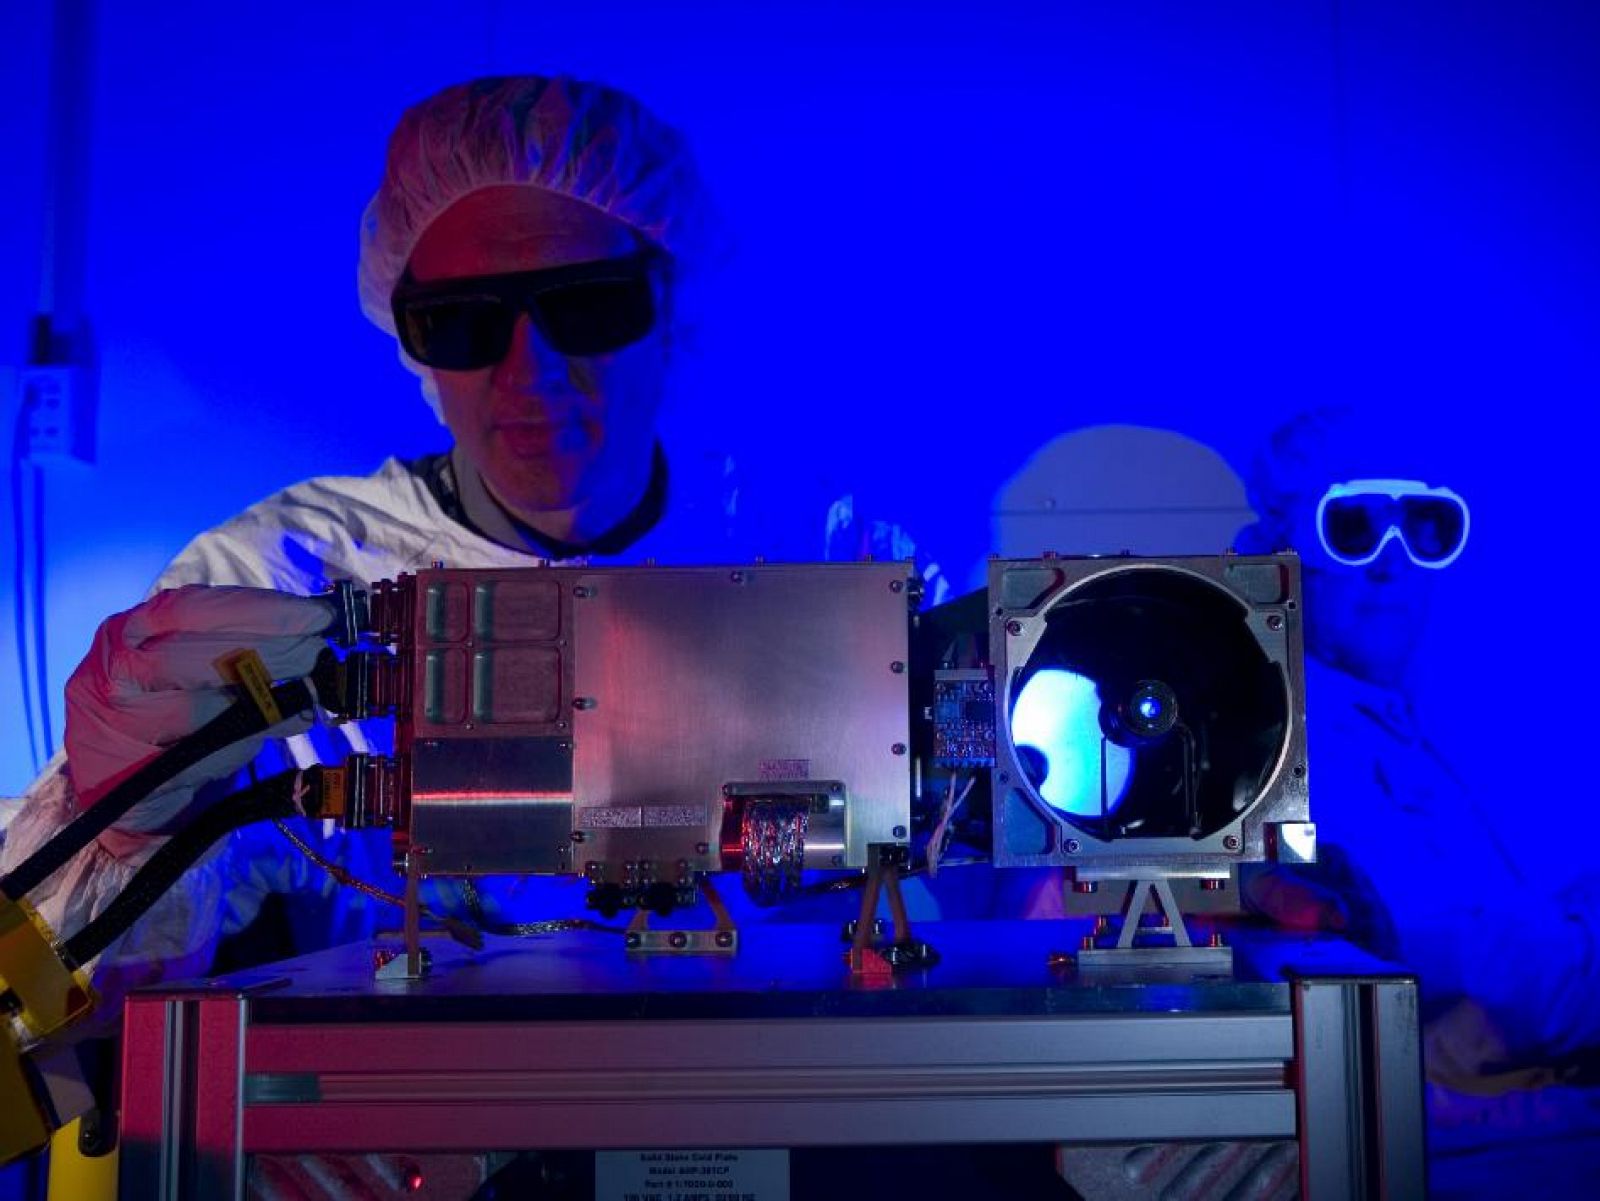 ChemCam (del inglés Chemistry and Camera), uno de los instrumentos con los que contará Curiosity en su viaje a Marte.